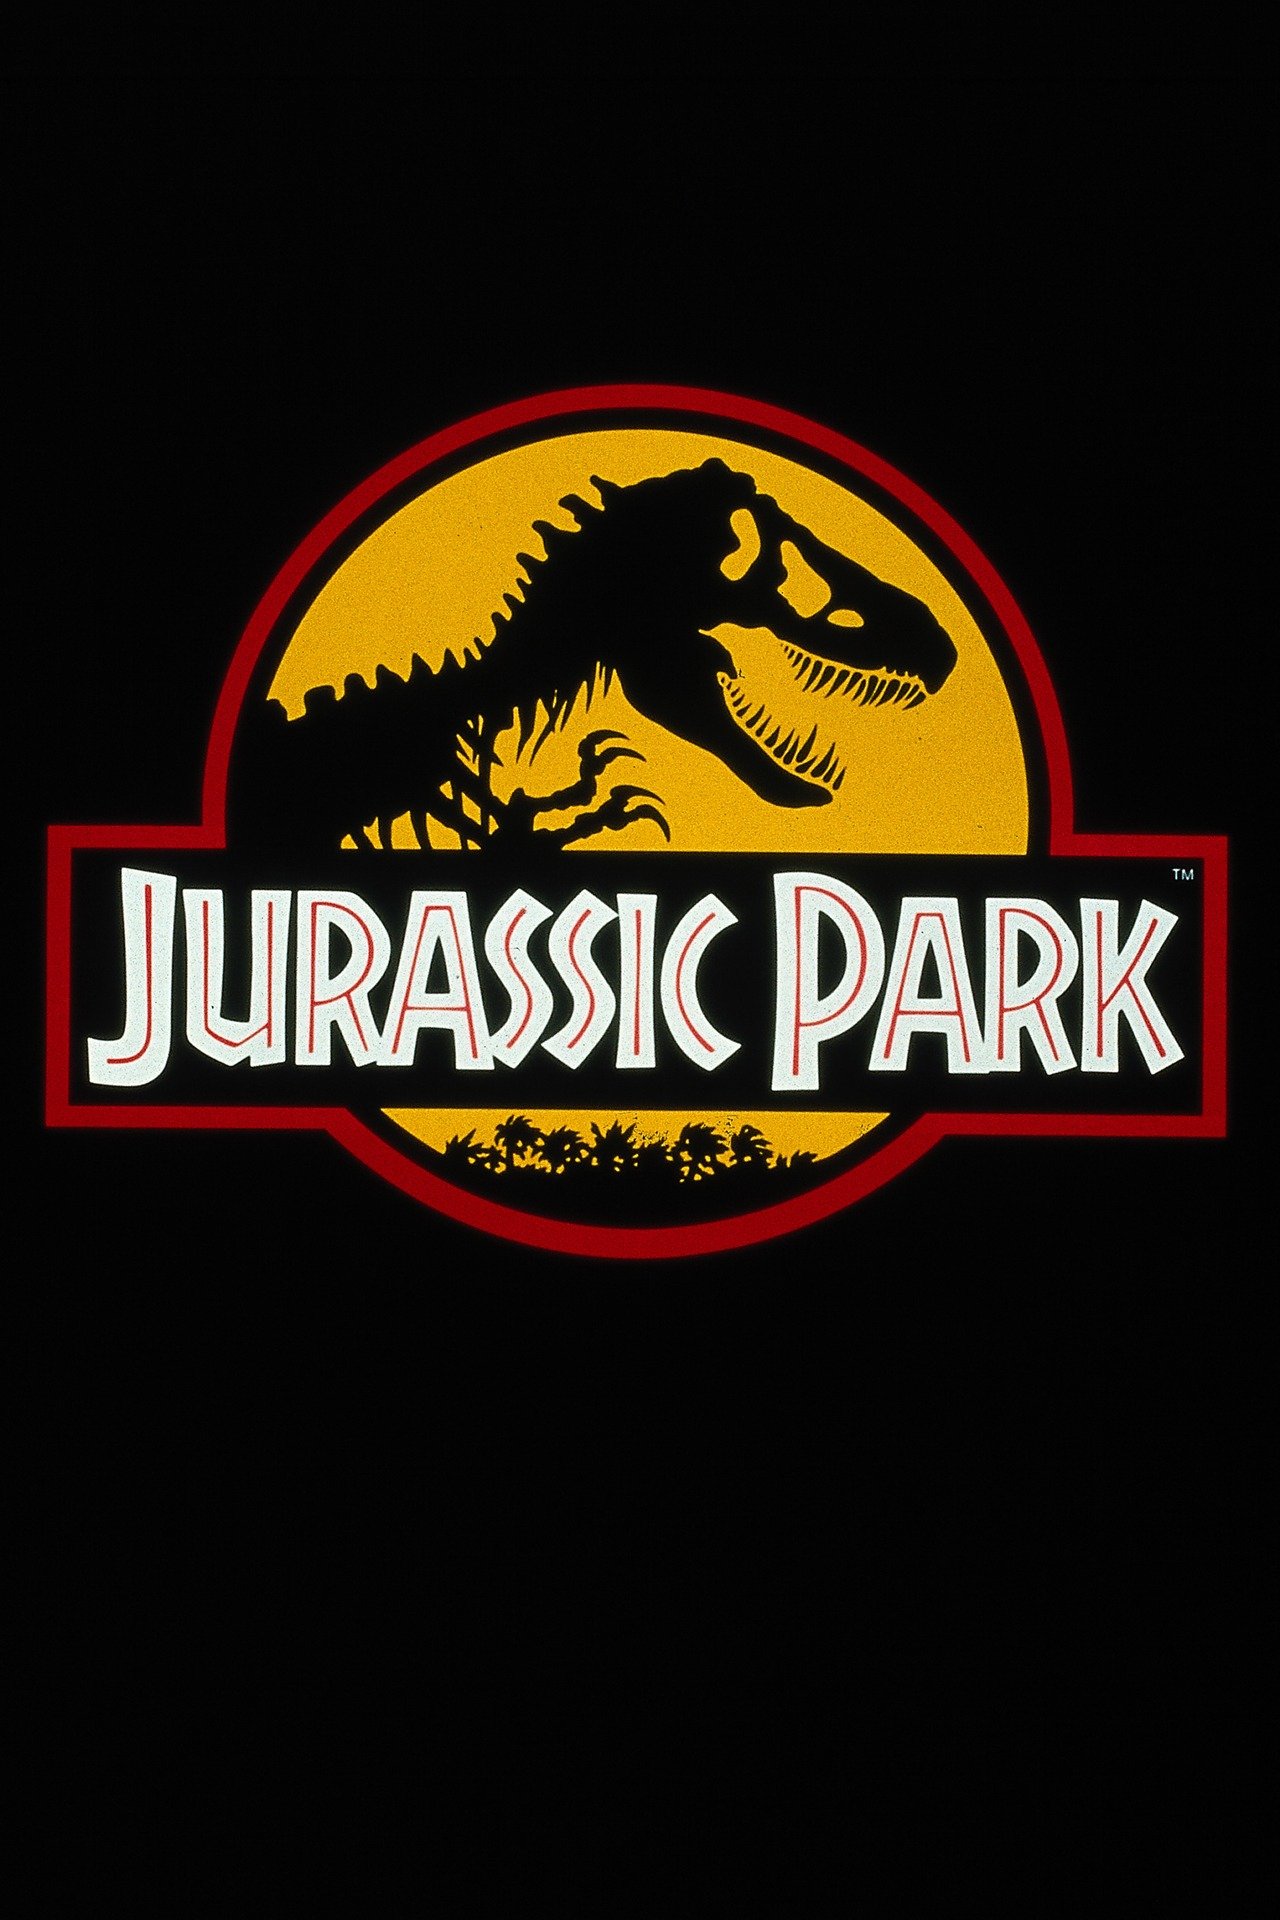 Jurassic park 4 free online movie martlasopa